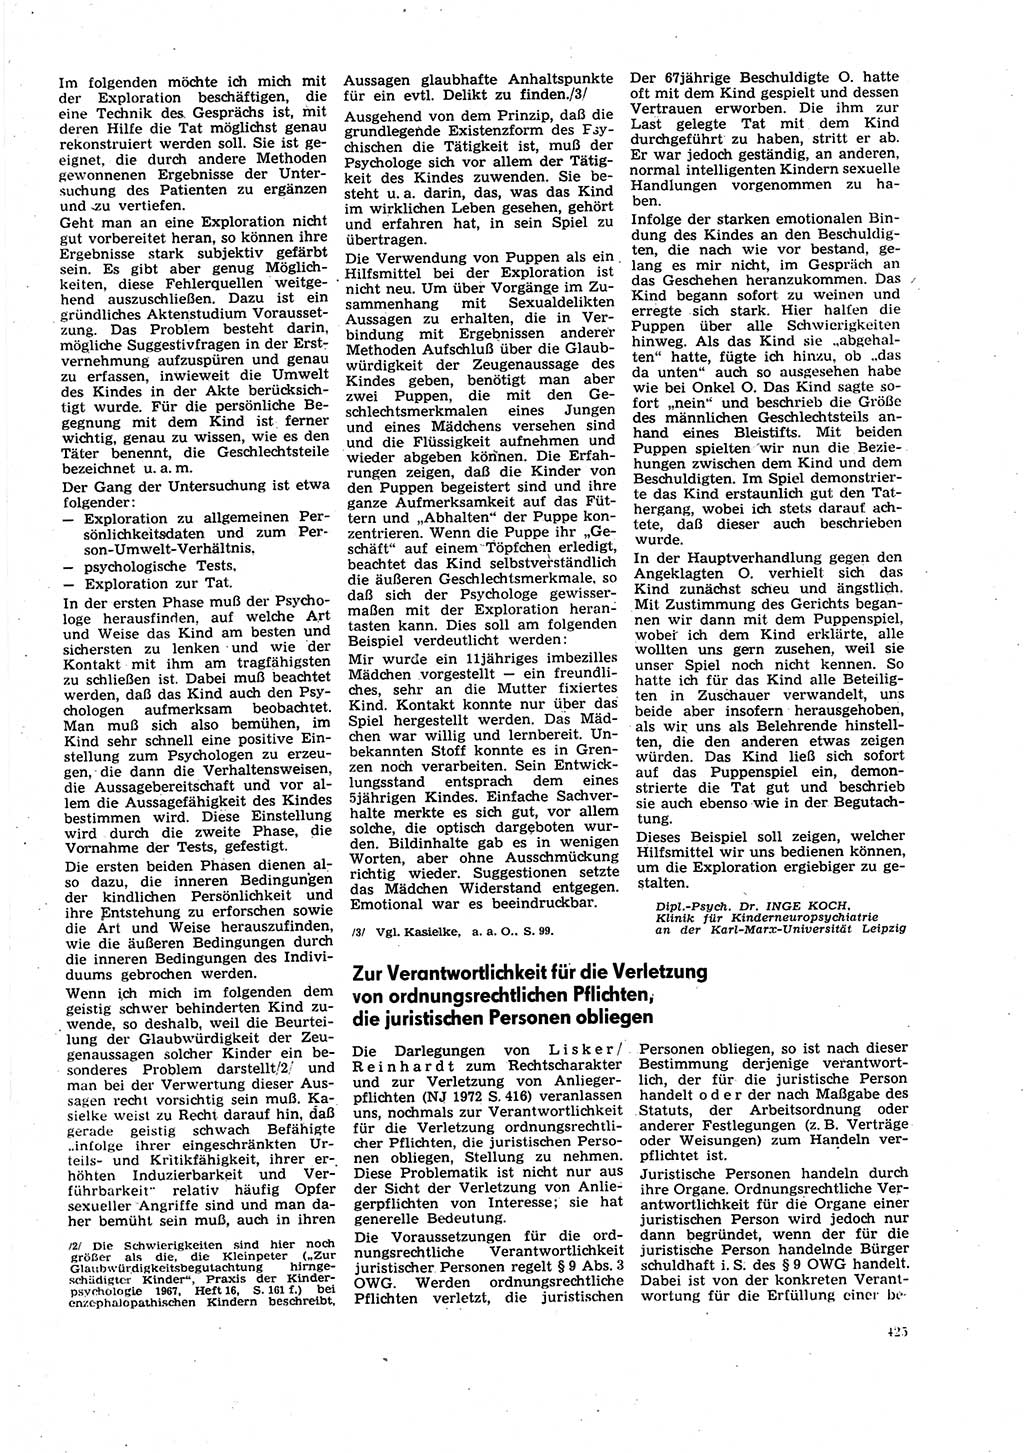 Neue Justiz (NJ), Zeitschrift für Recht und Rechtswissenschaft [Deutsche Demokratische Republik (DDR)], 27. Jahrgang 1973, Seite 425 (NJ DDR 1973, S. 425)